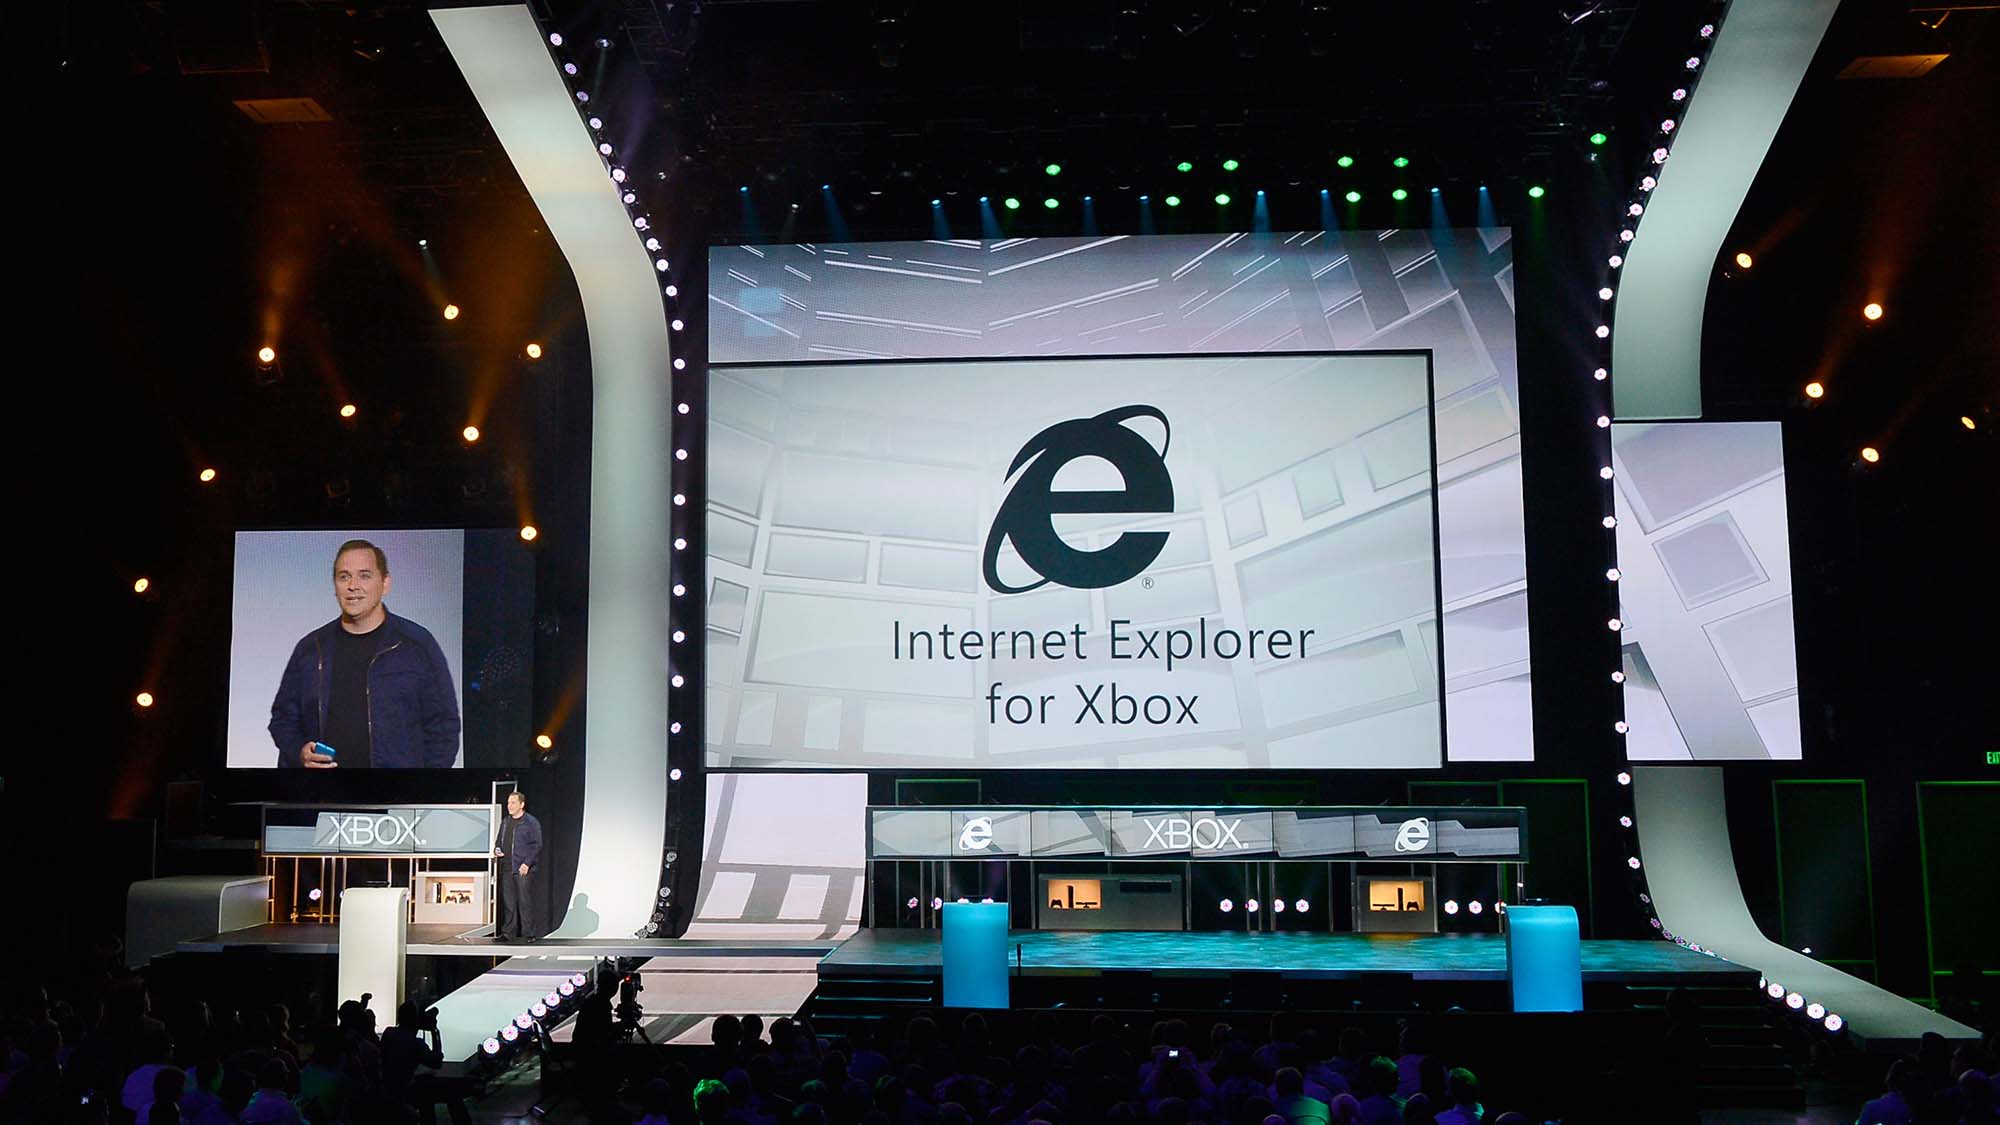 Le PDG de Xbox Live, Marc Whitten, présente Internet Explorer pour Xbox lors d'une conférence de presse Microsoft Xbox à l'Electronic Entertainment Expo